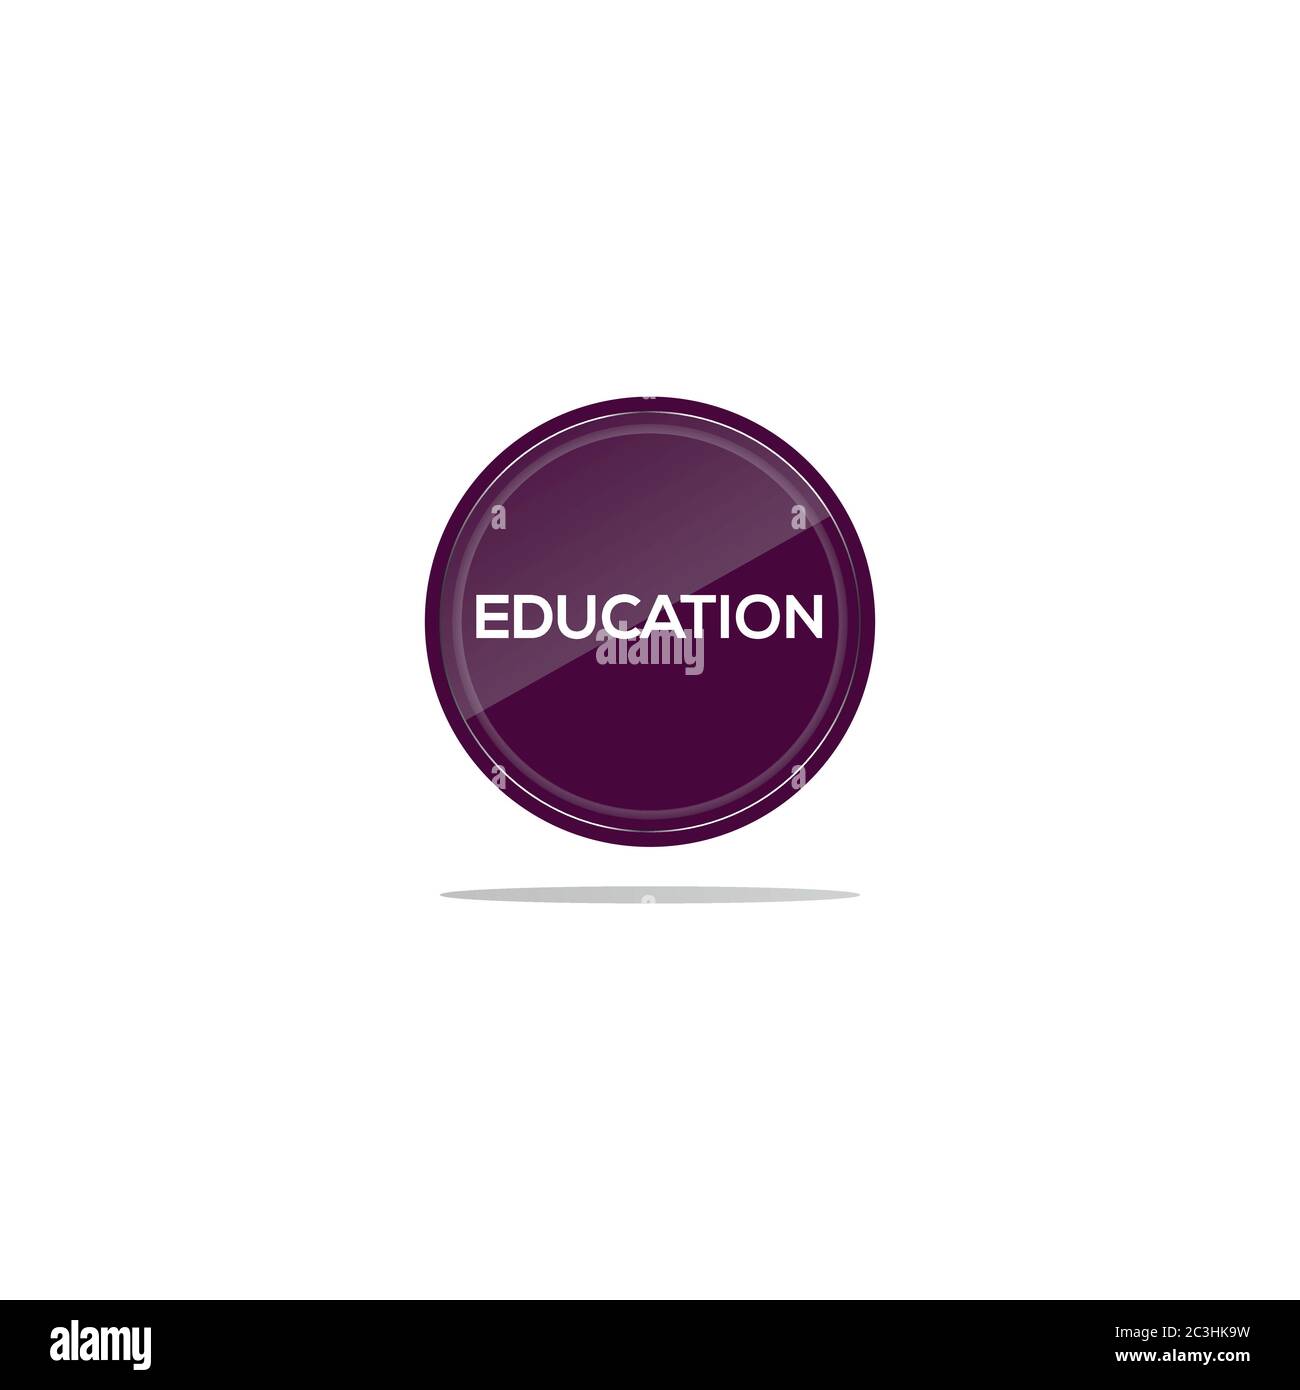 Scrivere istruzione in un cerchio viola. Davanti all'articolo per l'istruzione è presente un vetro circolare. Illustrazione Vettoriale